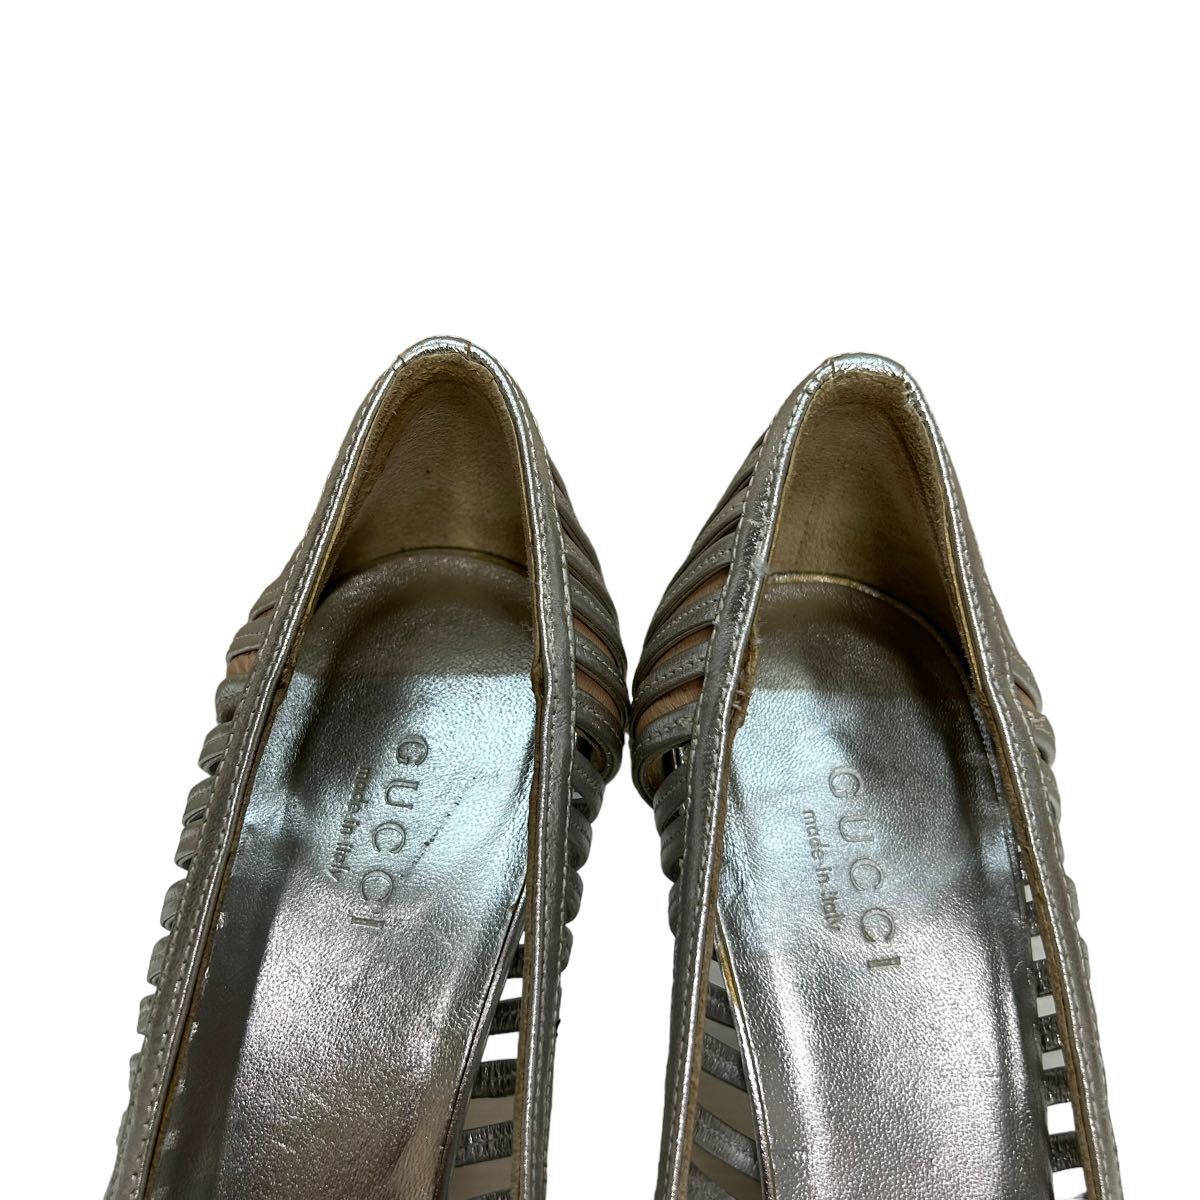 BB837 GUCCI Gucci женский туфли-лодочки 37C примерно 23.5cm серебряный кожа Италия производства 